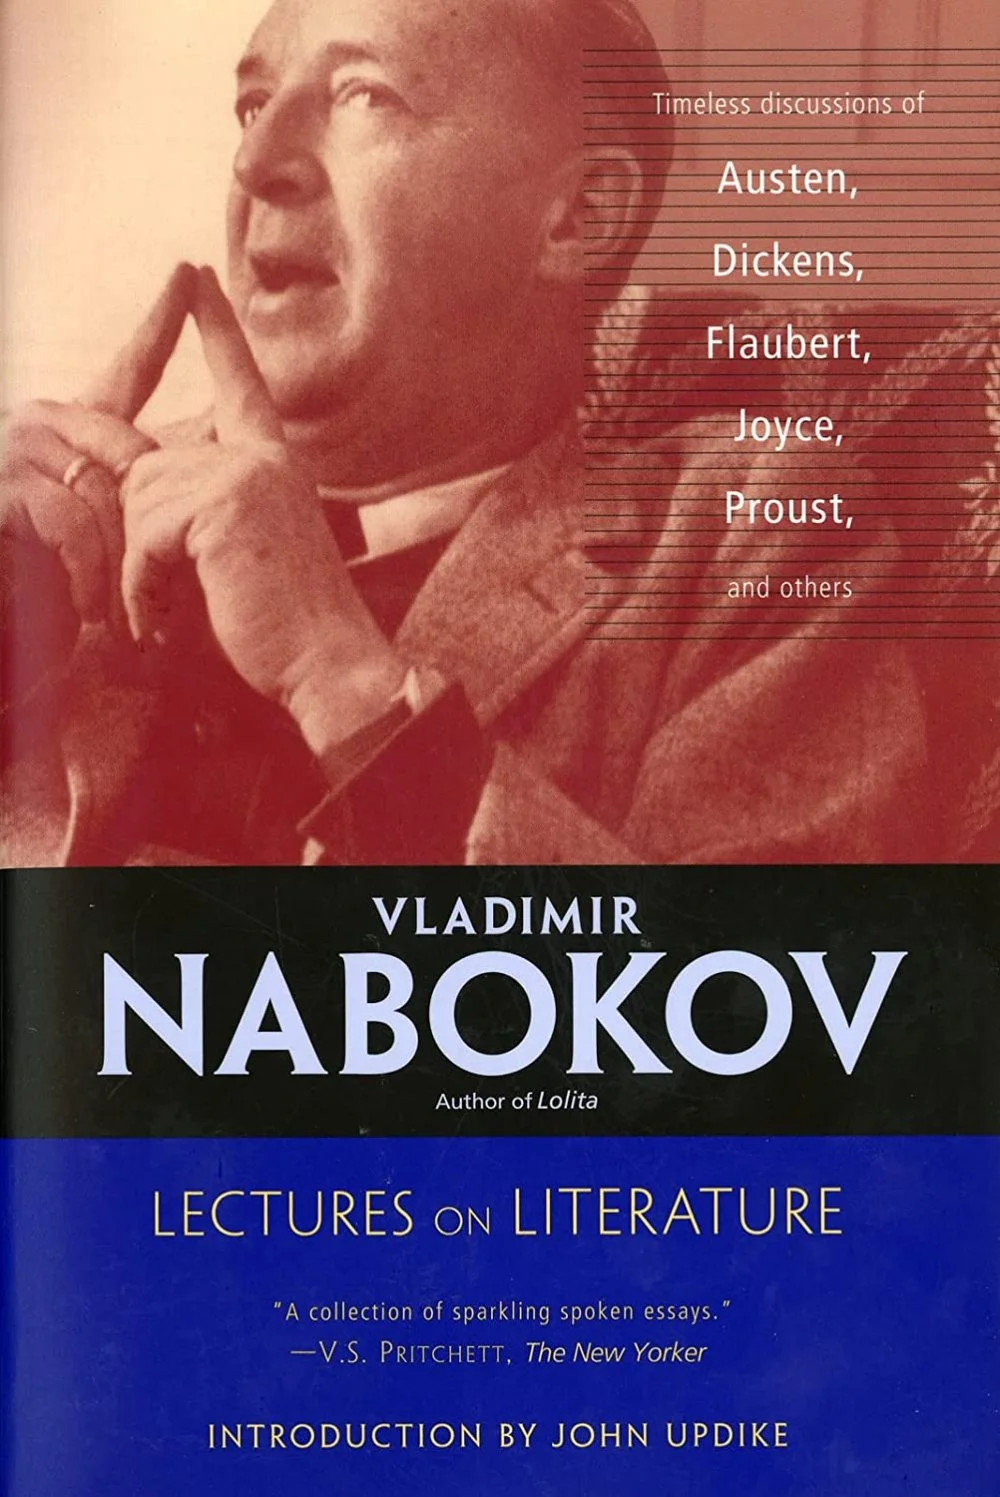 Лекции по истории литературы Набокова (американское издание)/из открытого доступа